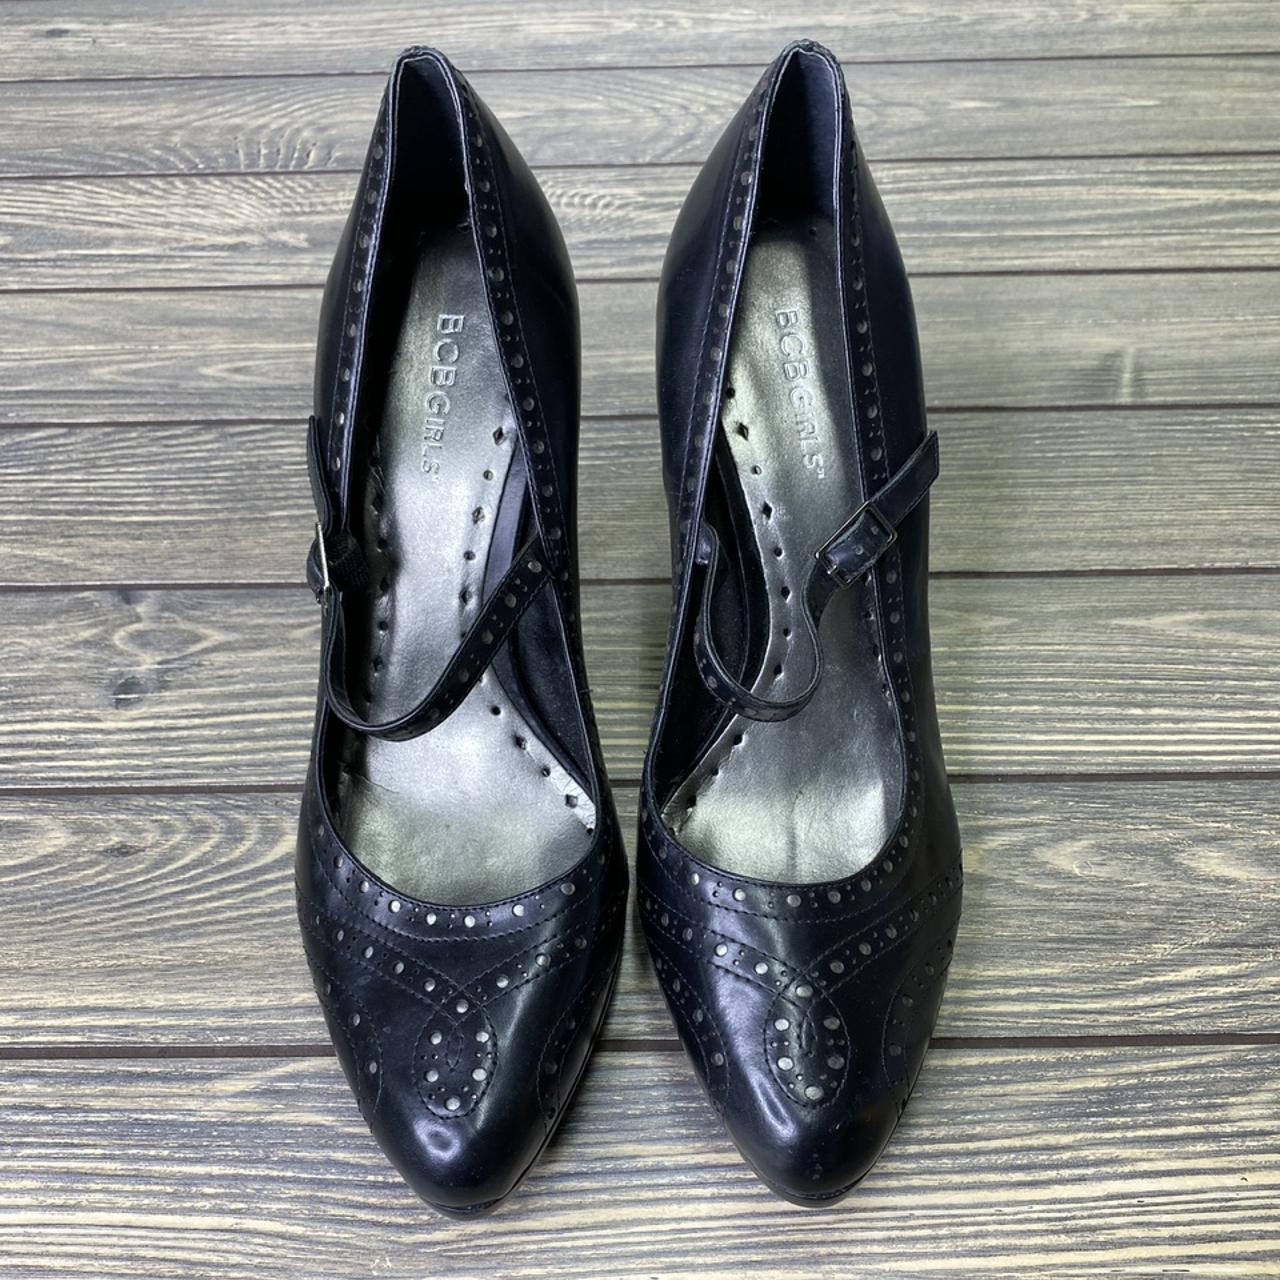 Black BCBGirls Oxford style stiletto high heels.... - Depop